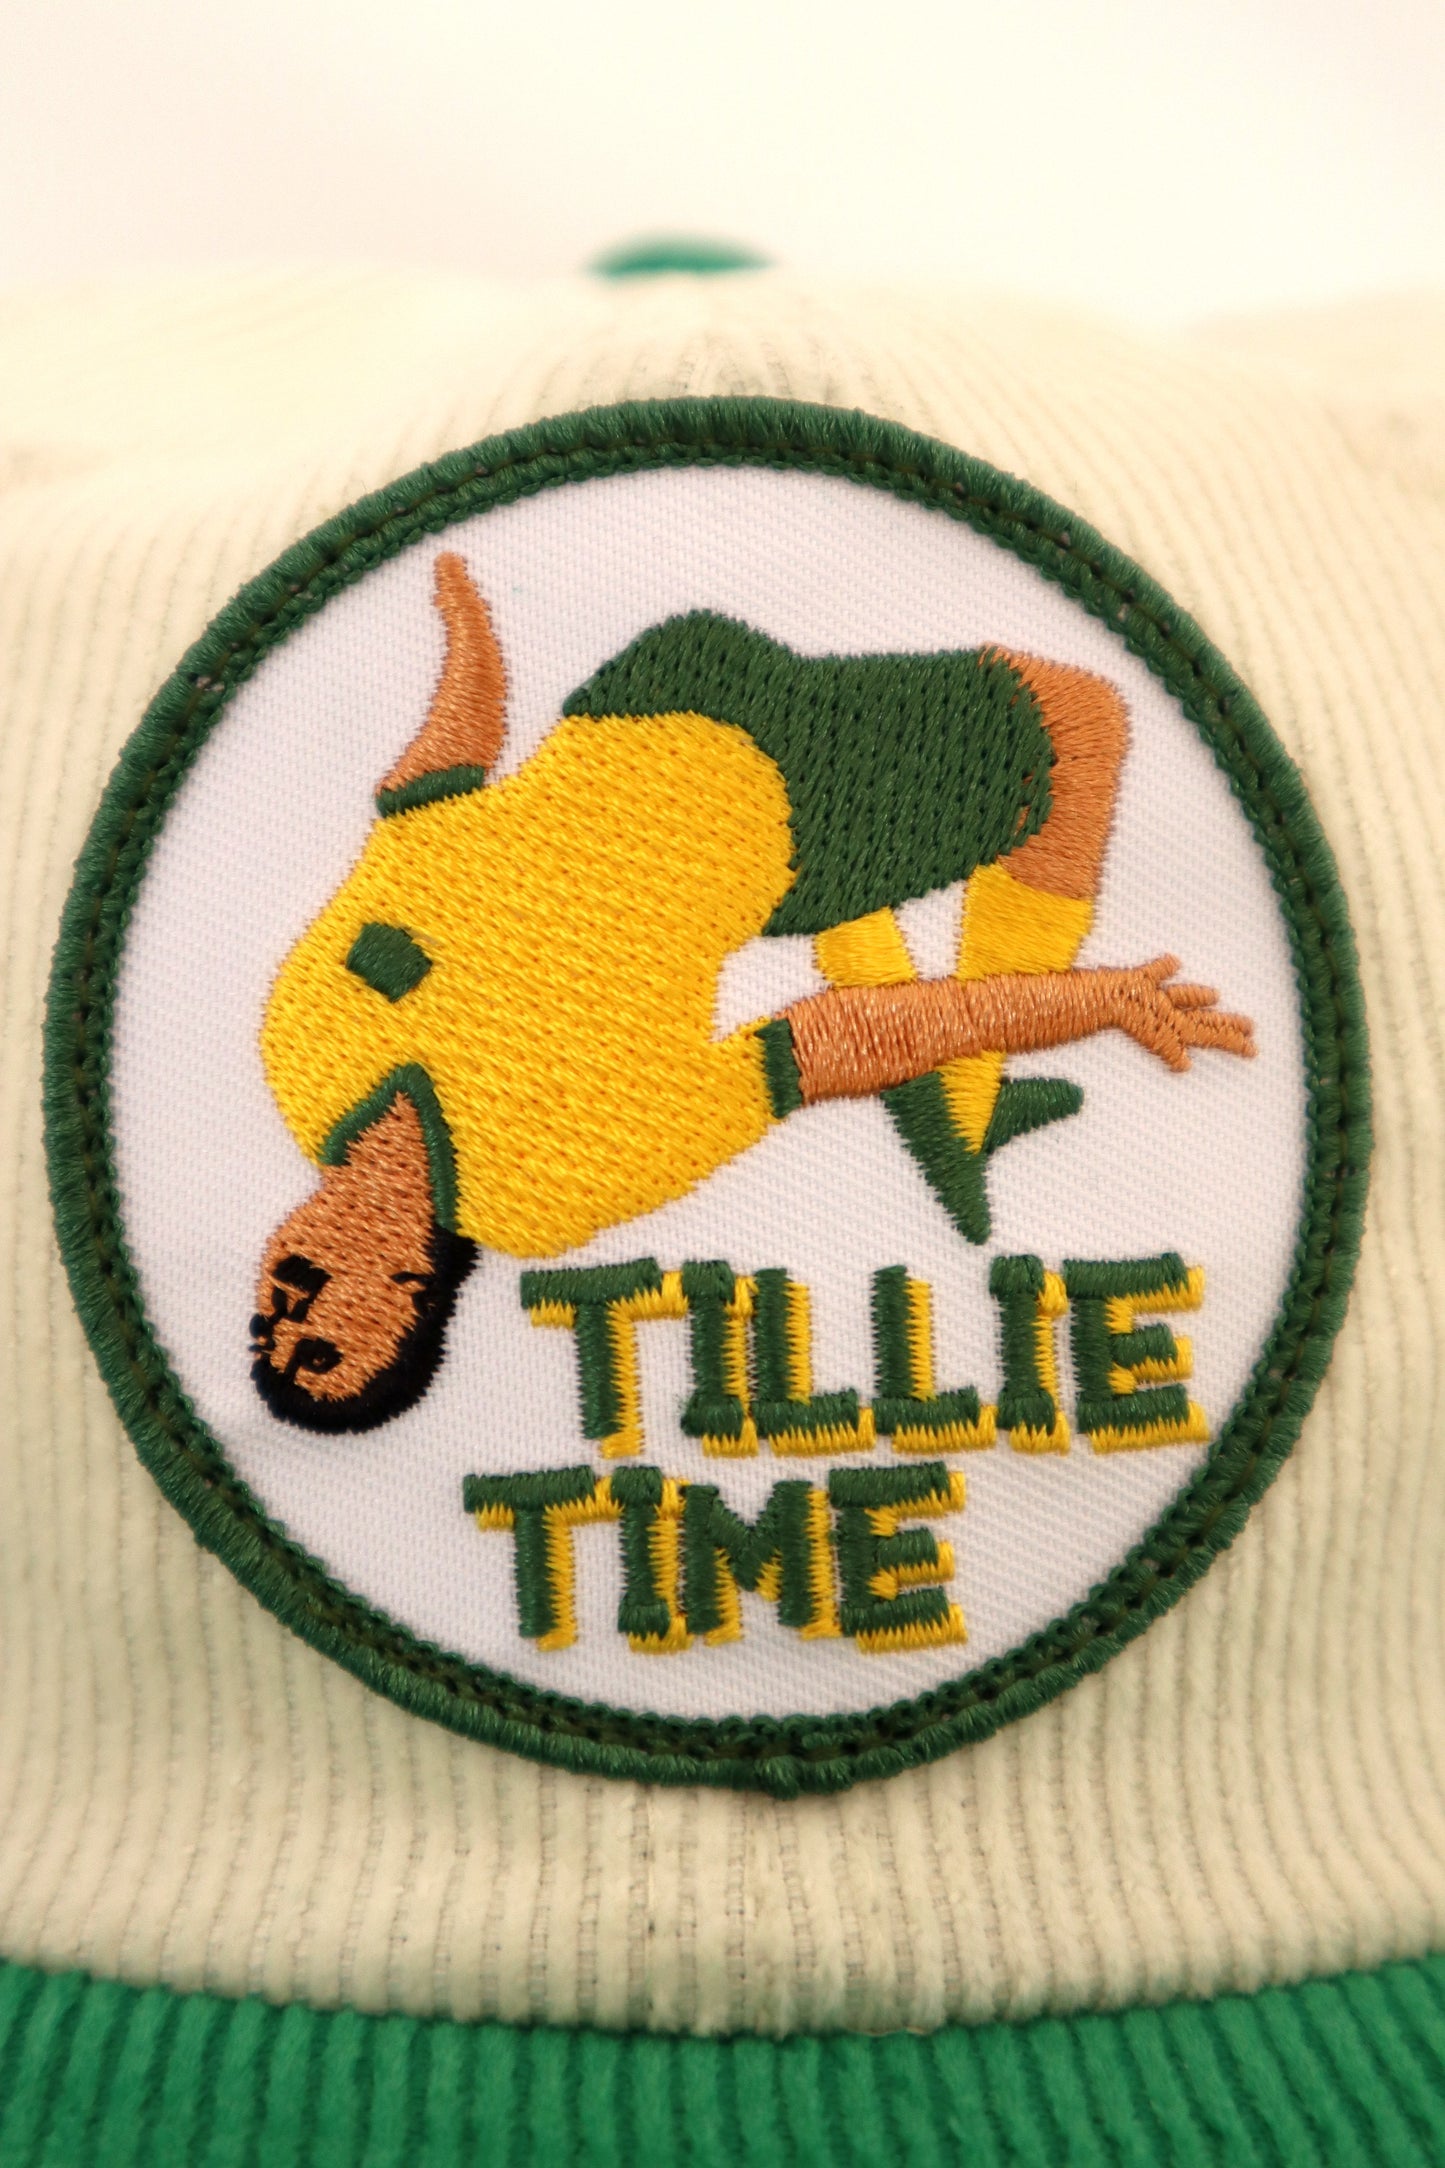 Tillie Time